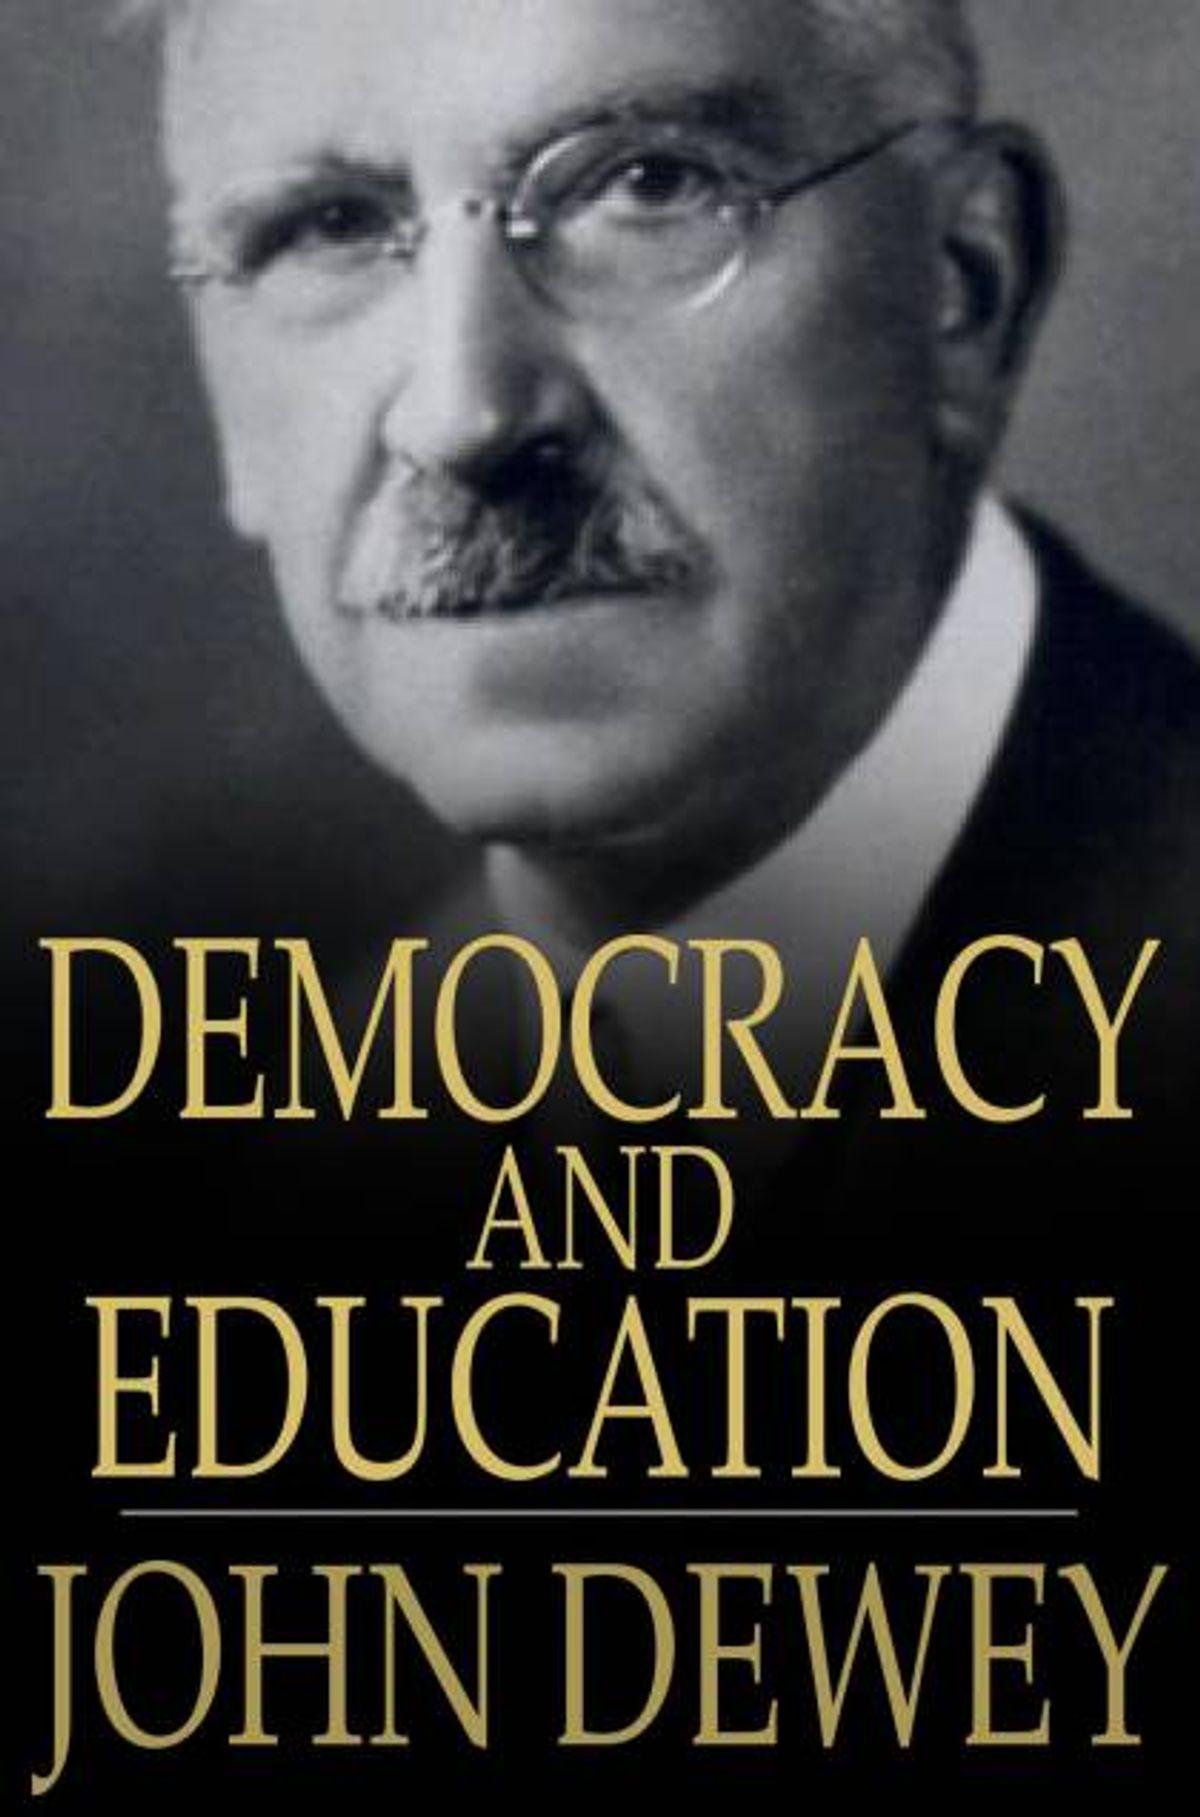 كتب شريرة الديموقراطية والتعليم - الكتب الأكثر شرًا في تاريخ البشرية التي نشرت الفساد في العالم